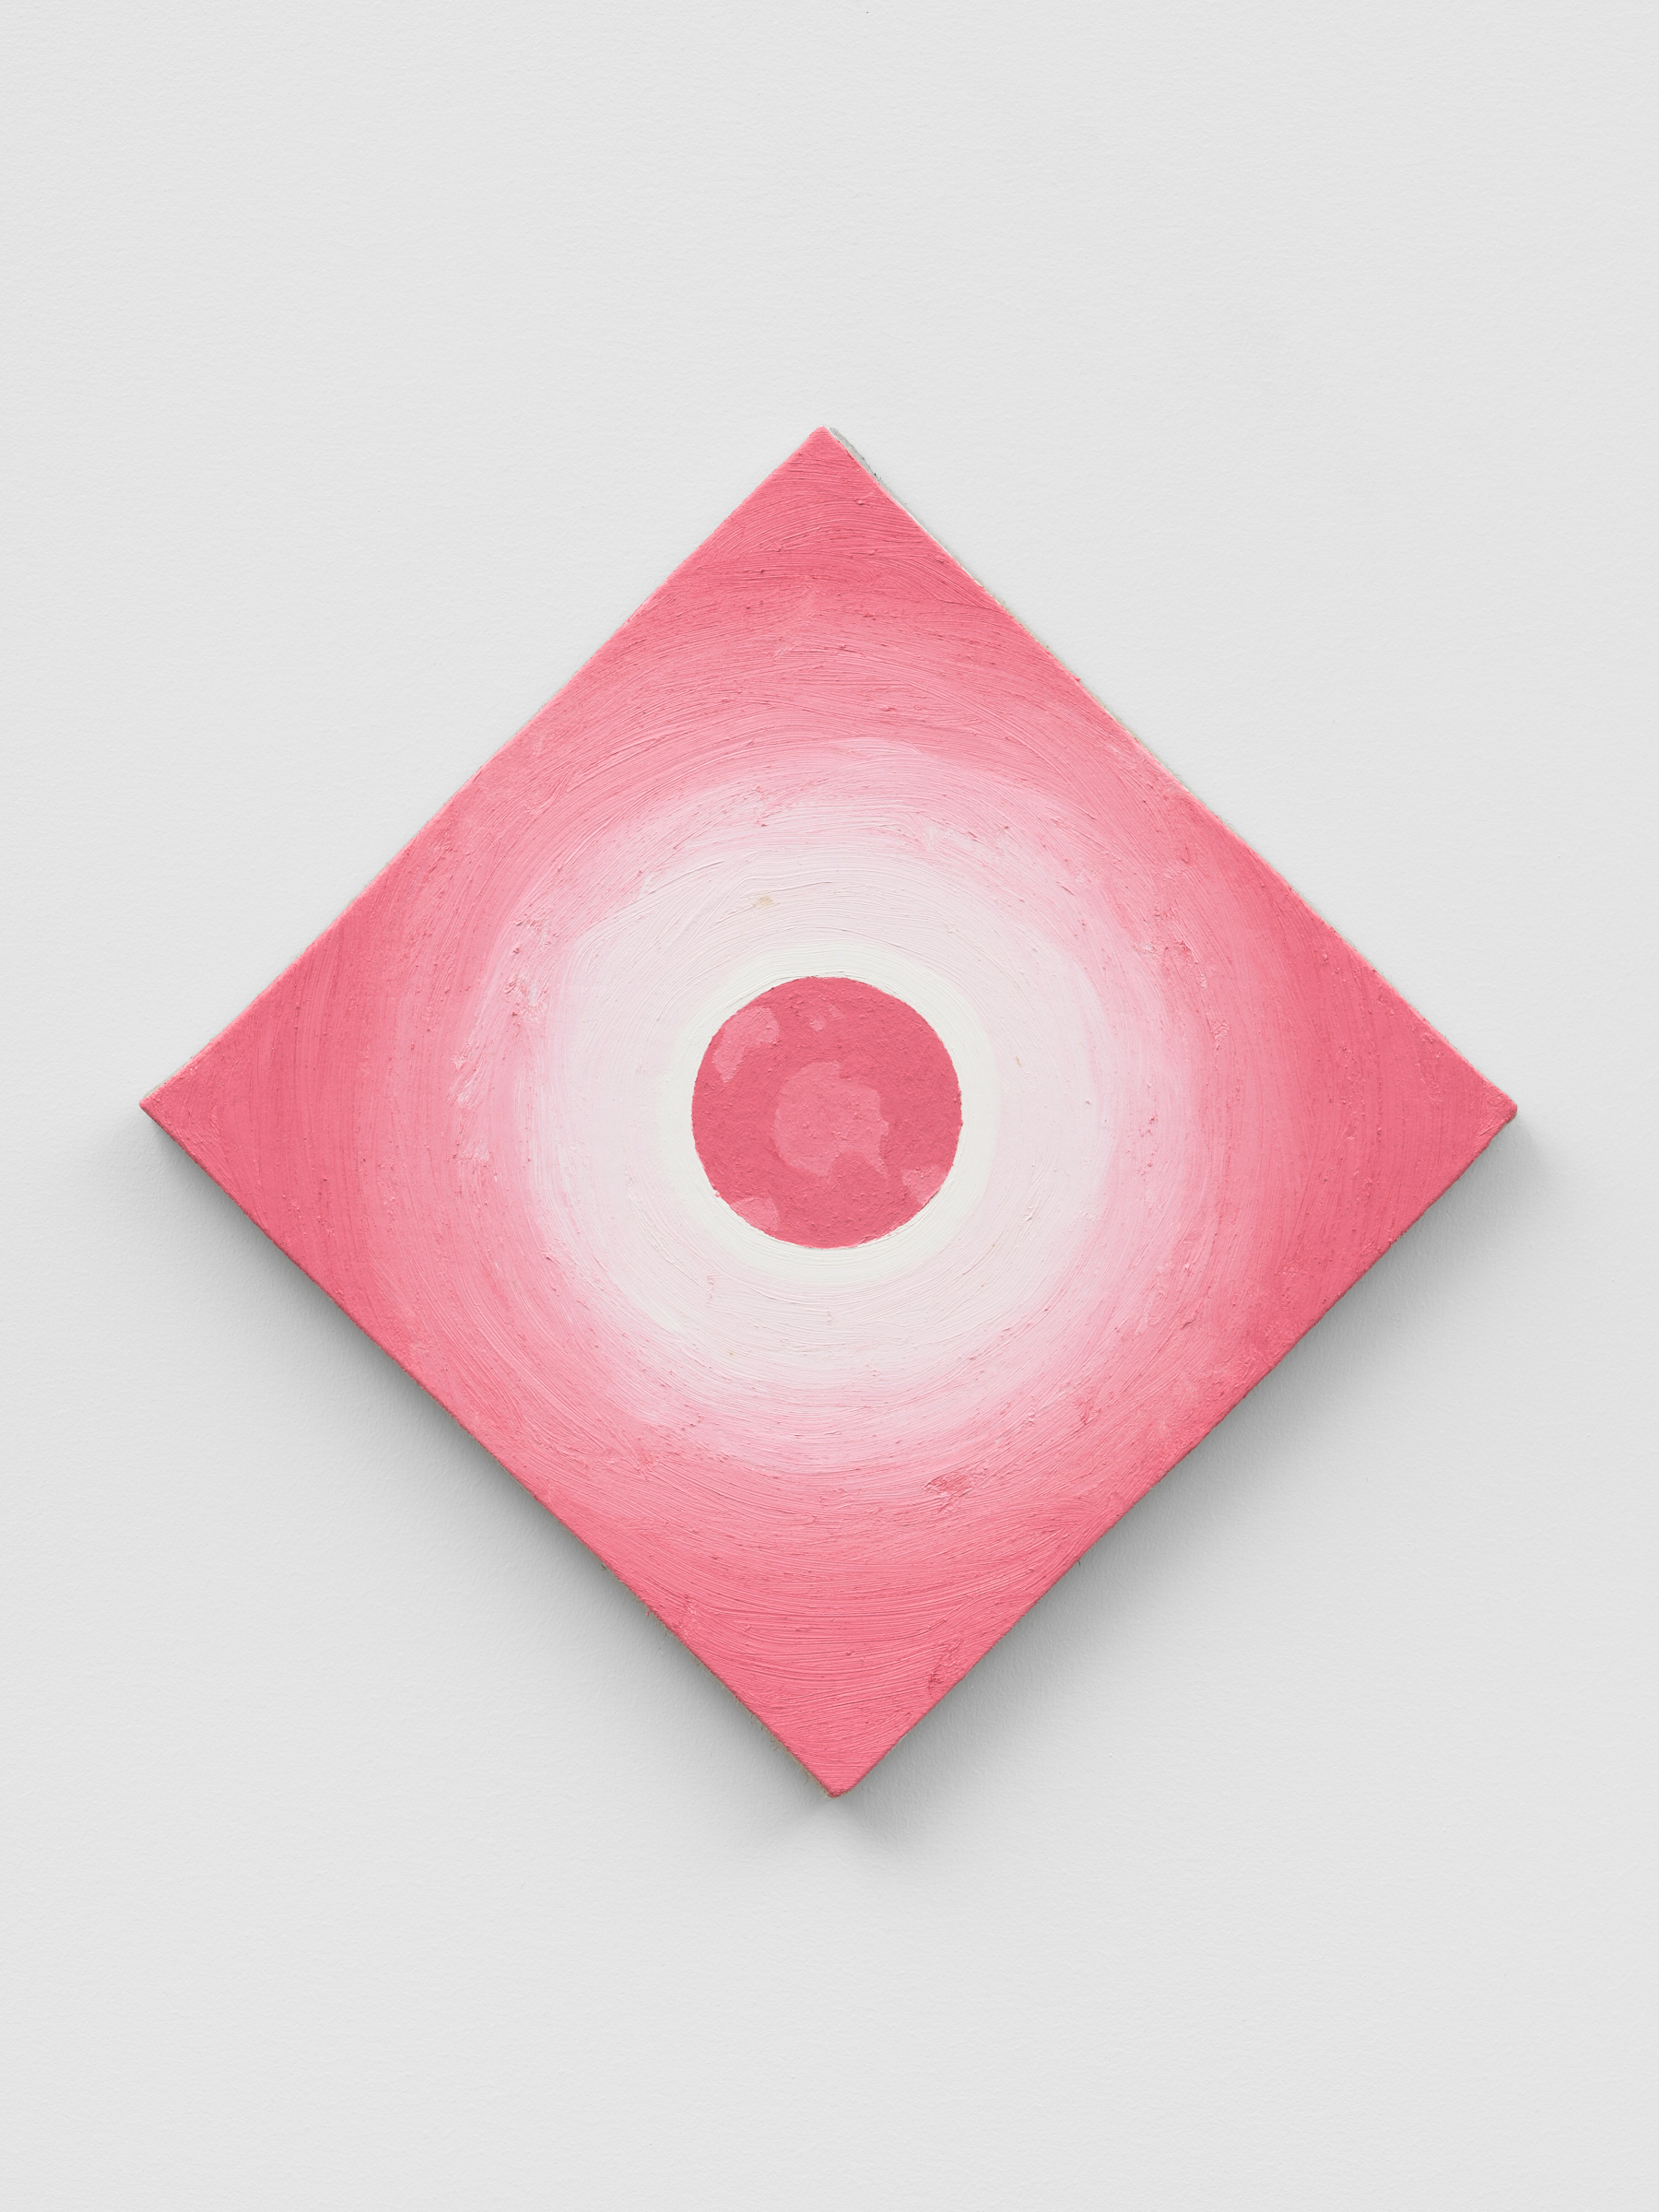 Alex Kwartler, Eclipse (Pink), 2022, Oil on linen, 16 x 16 in.